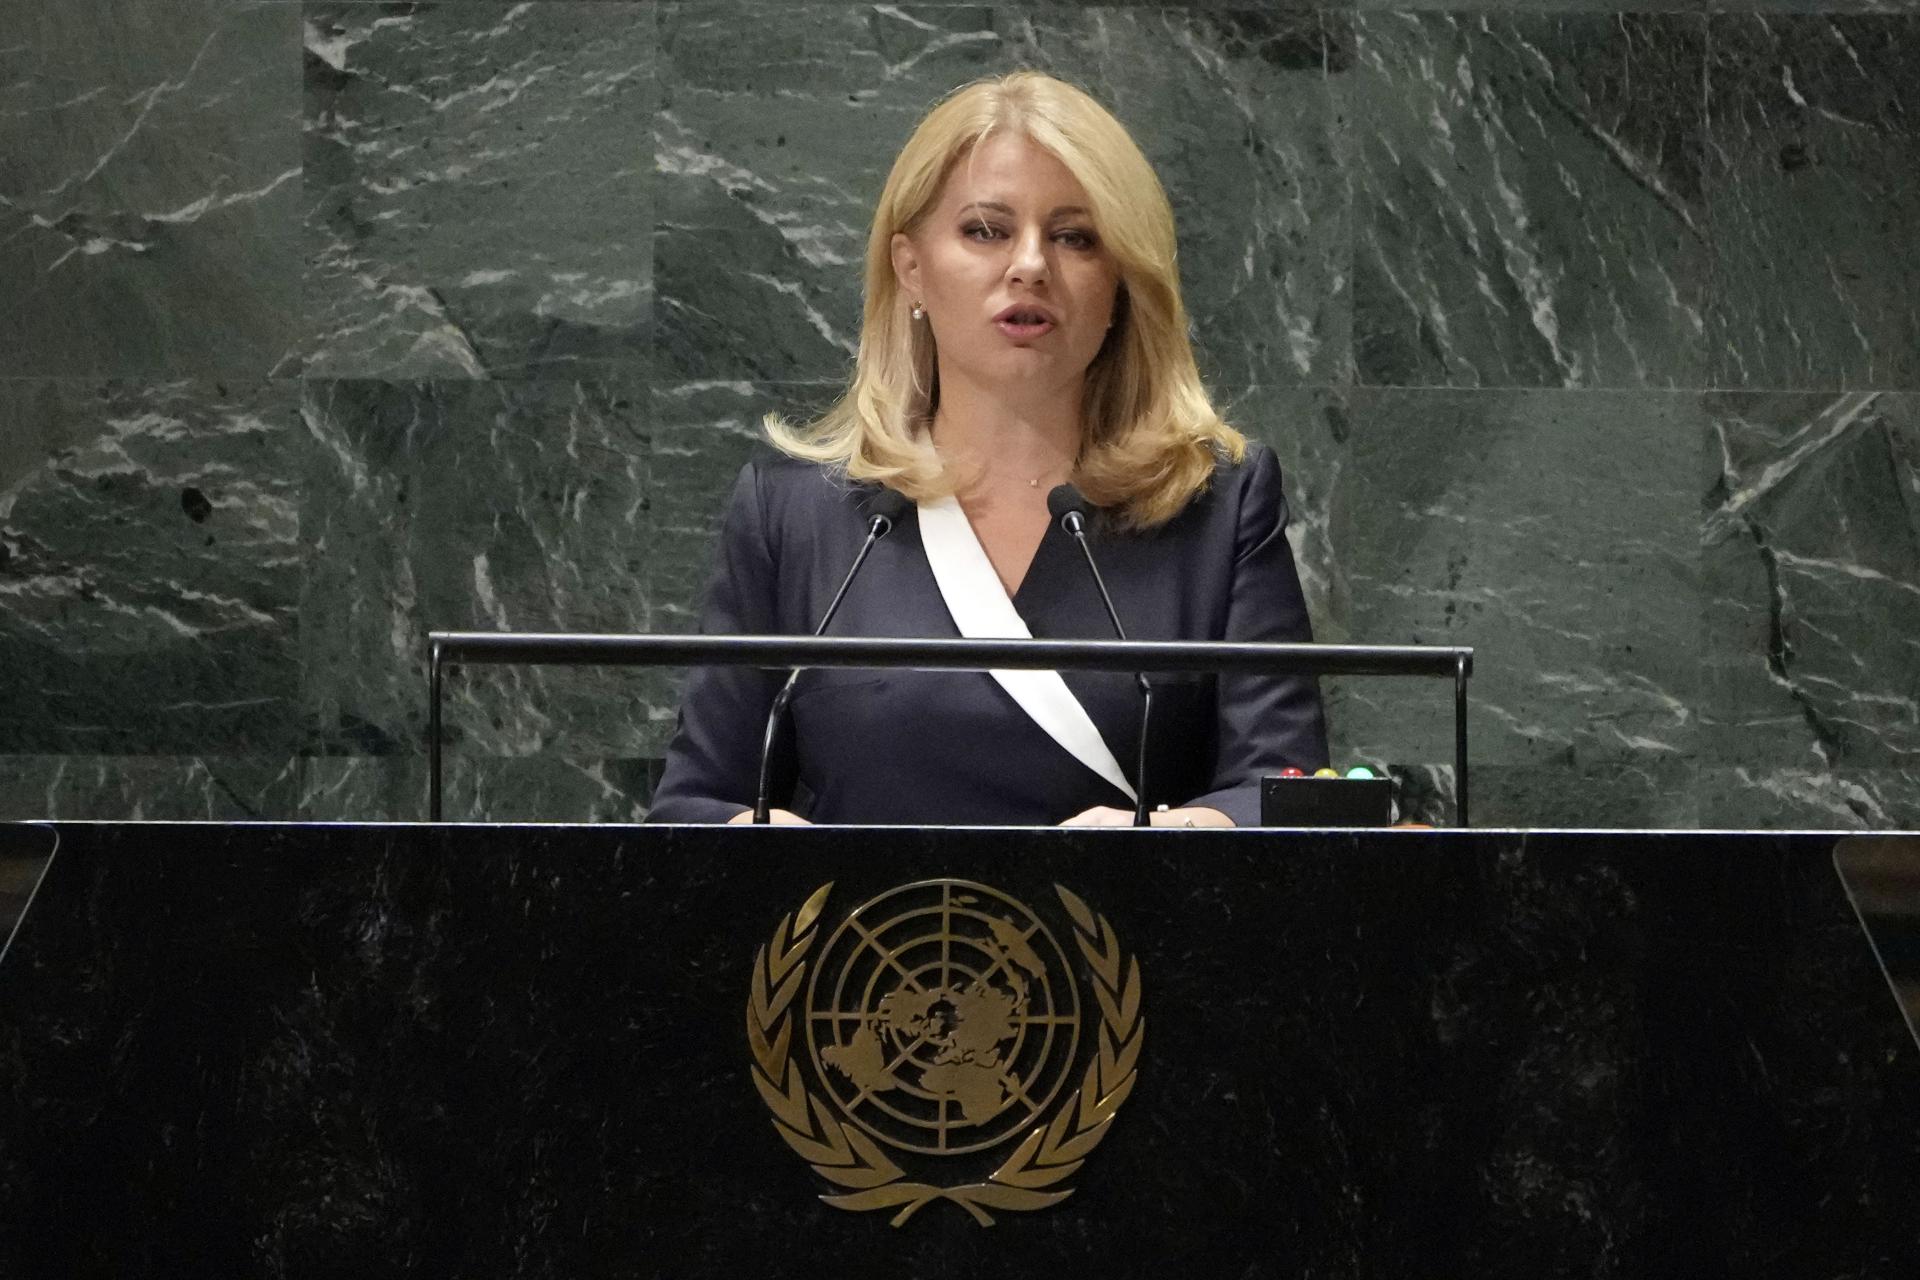 Cieľom je obnova mieru, vlani zahynulo v konfliktoch najviac ľudí od roku 1994, povedala Čaputová v OSN